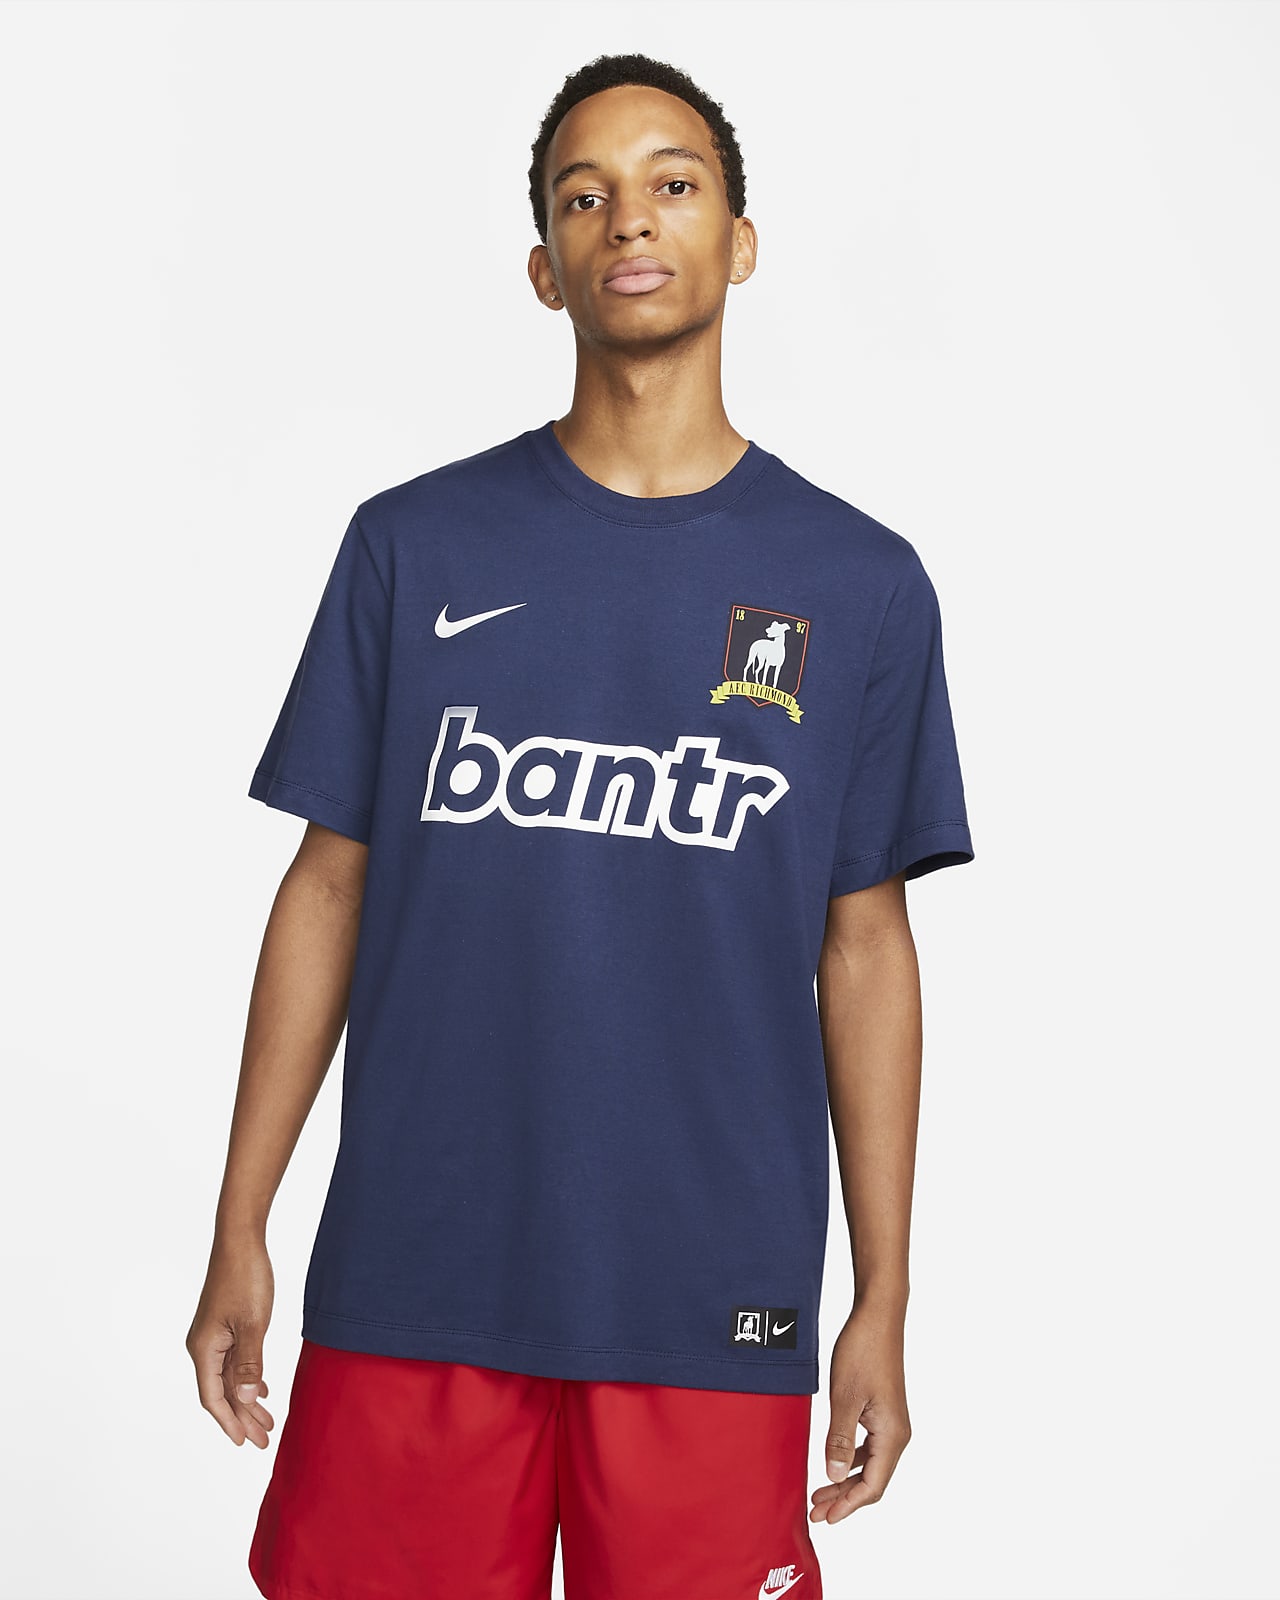 AFC Richmond Men's Nike Bantr T-Shirt